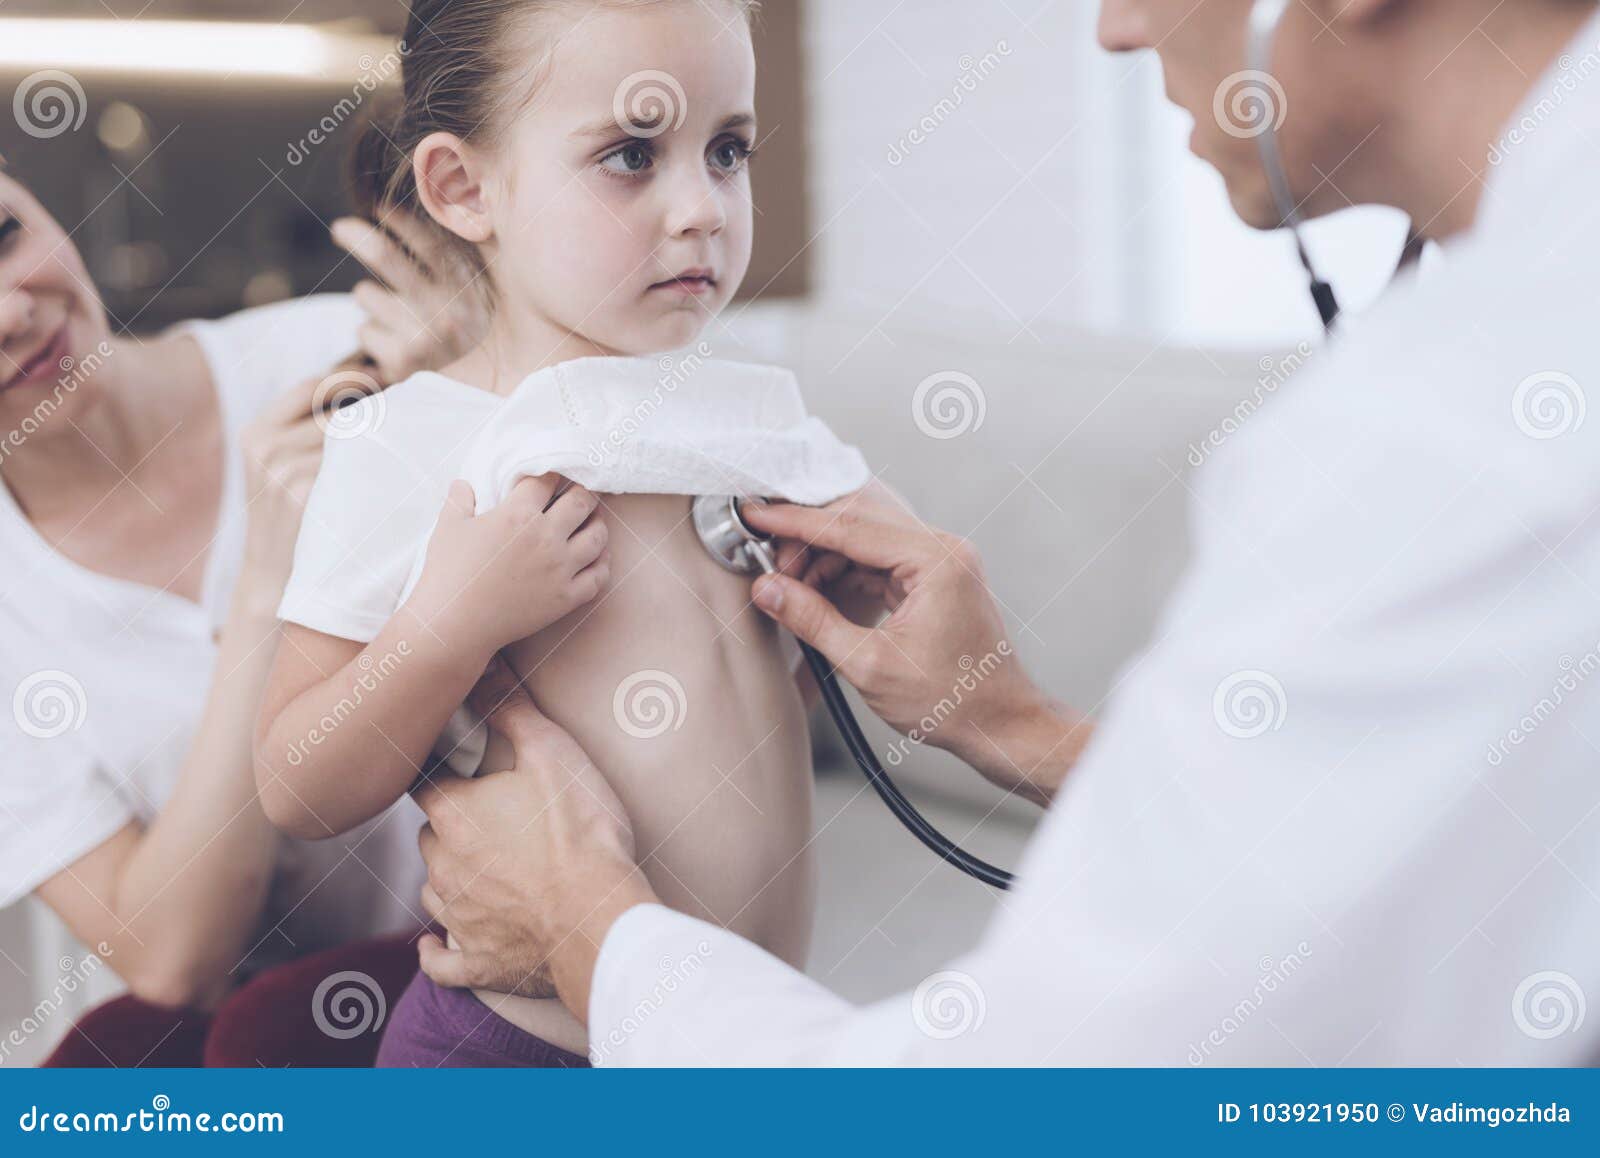 Врач лапает. Прослушивание стетоскопом девочку. Прослушивание девочек у врача. Доктор слушает. Доктор слушает маленьких девочек.